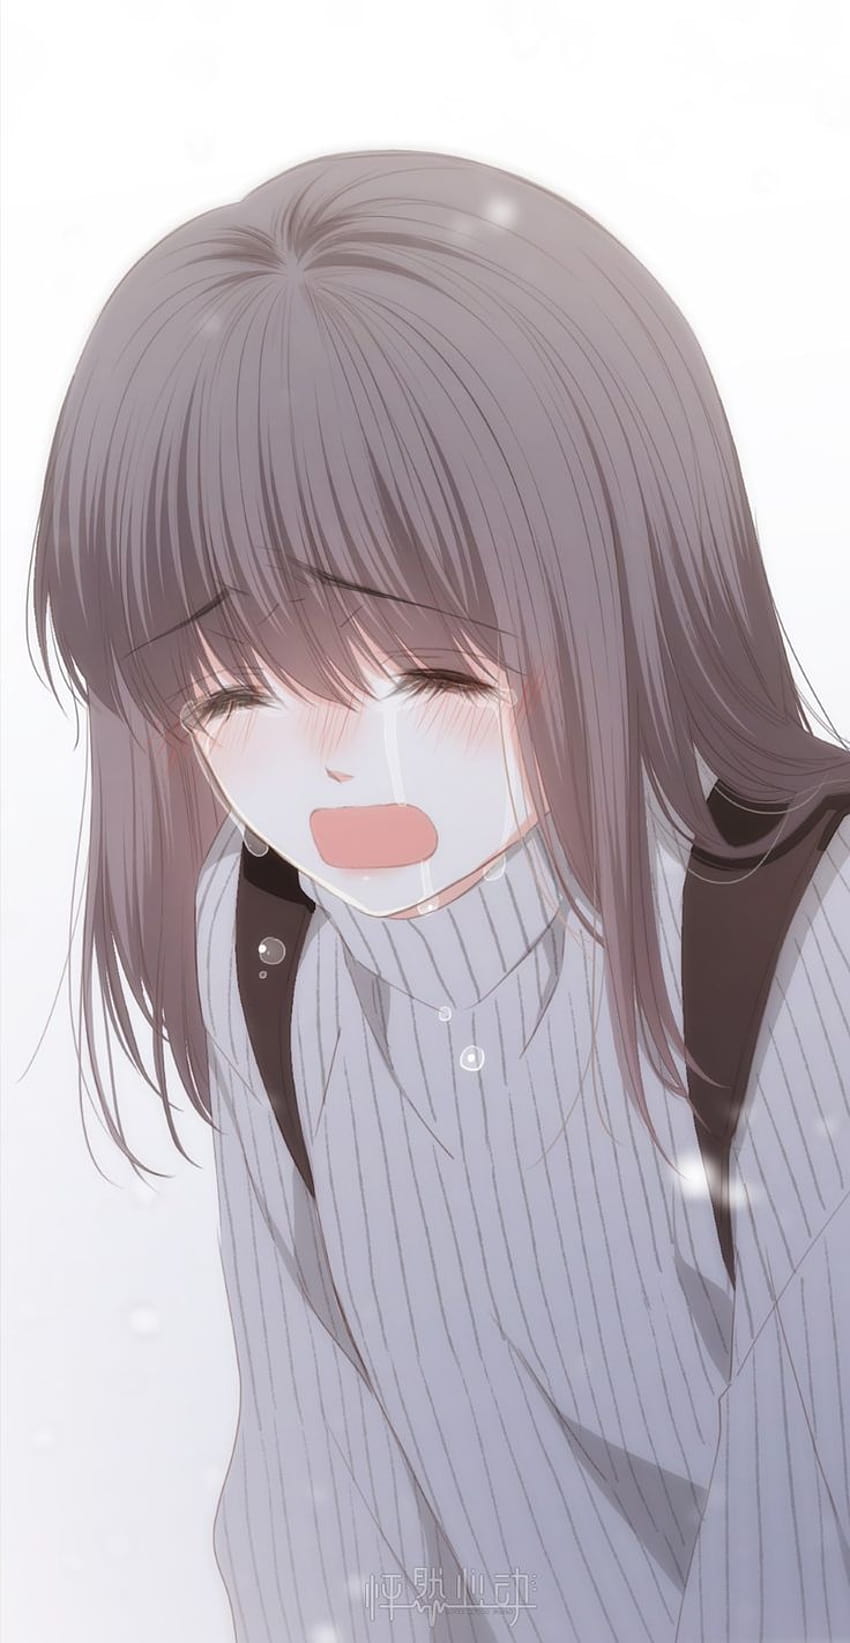 Manga Drawing Anime Crying - Manga Girl Crying - 500x603 PNG Download -  PNGkit